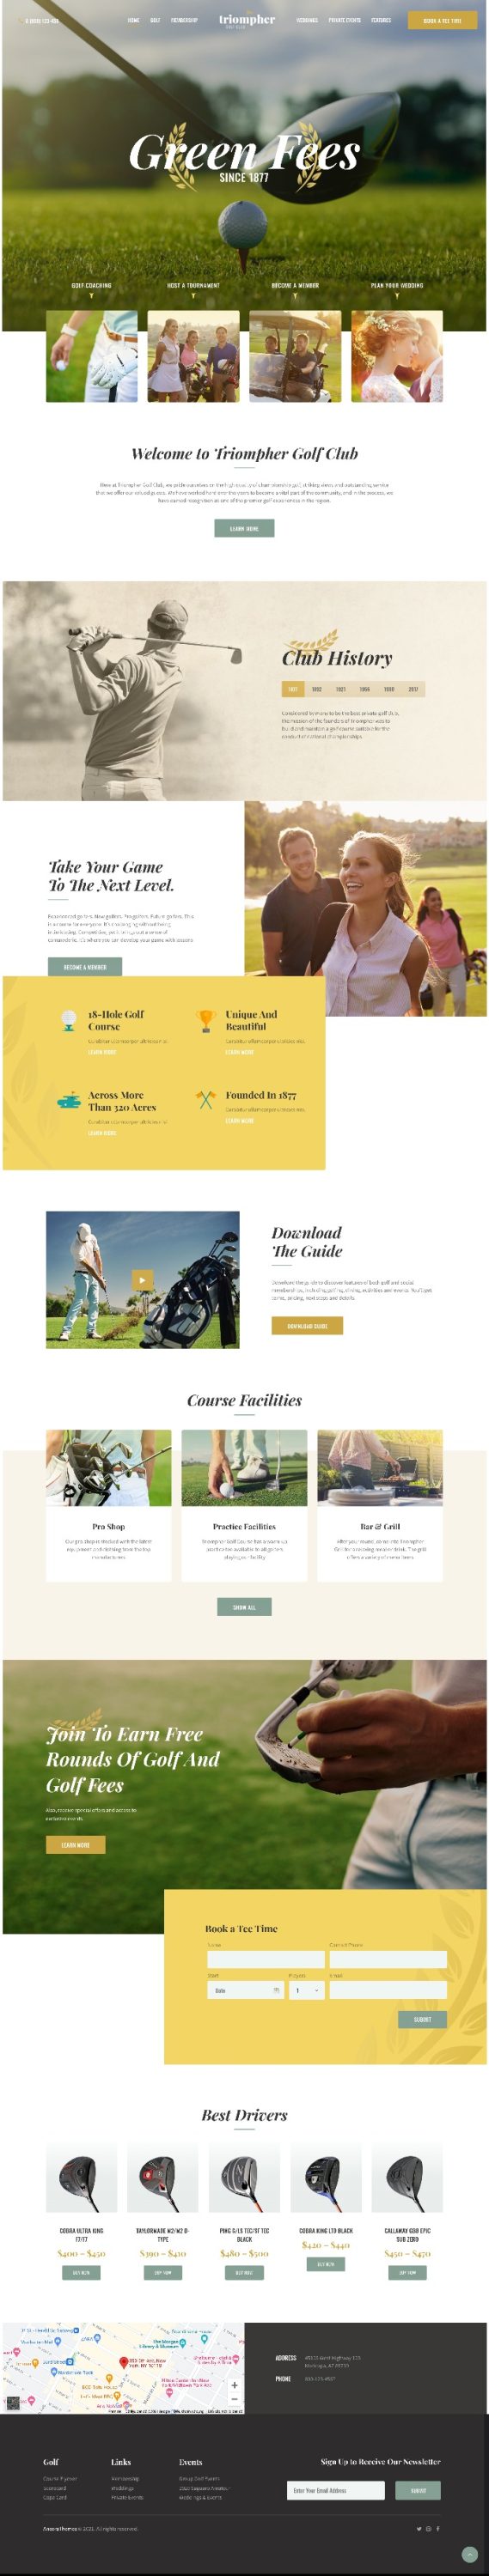 Mẫu Website Giới Thiệu Dịch Vụ Golf Triompher Home 2